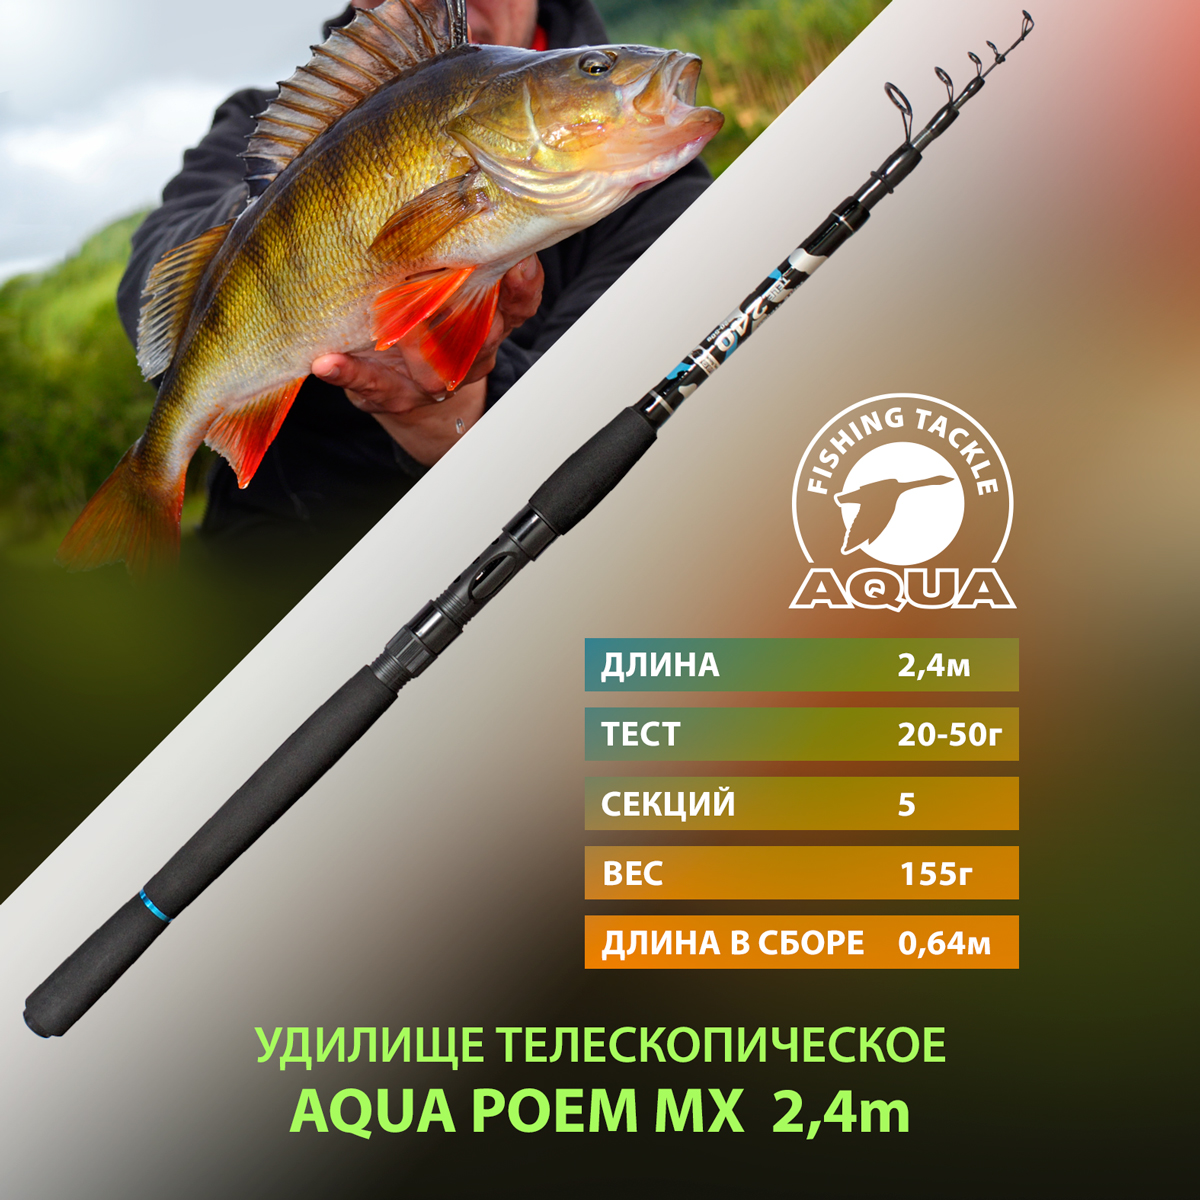 Удилище телескопическое для рыбалки AQUA POEM MX